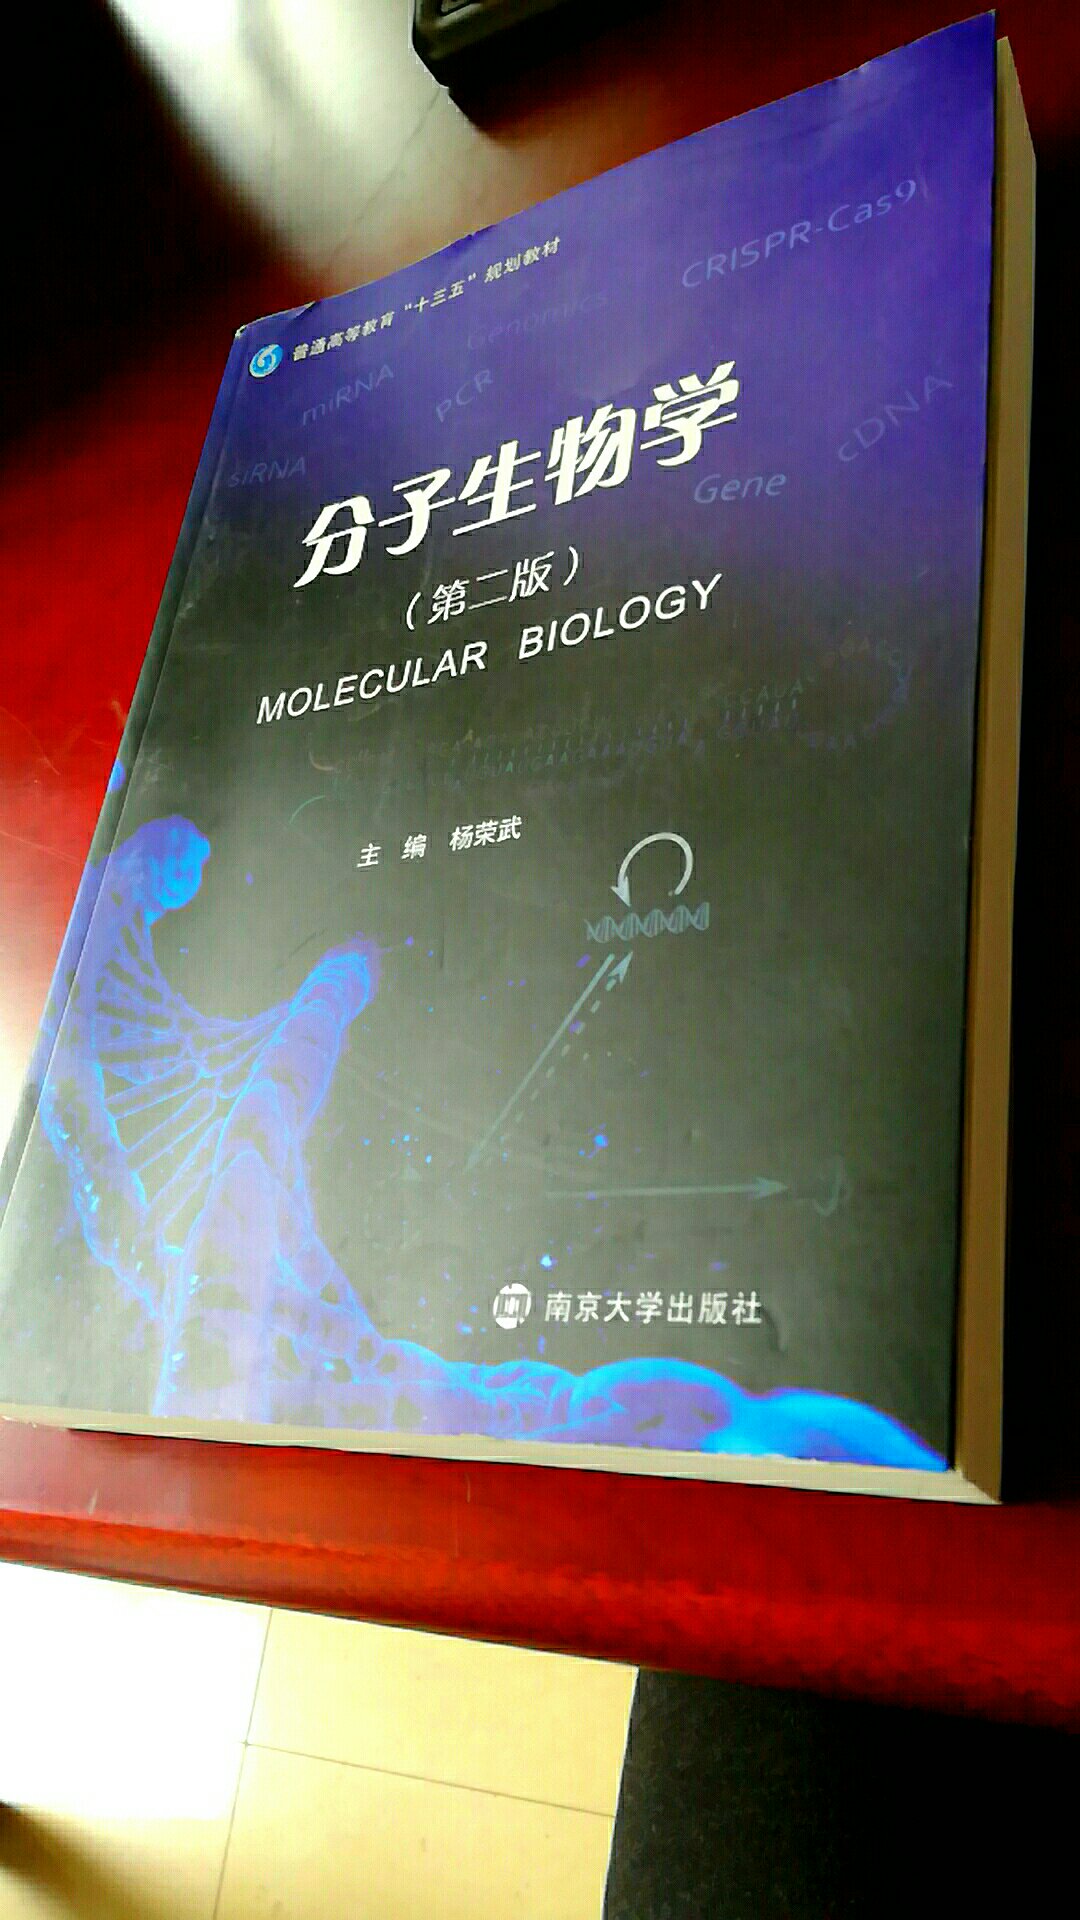 紧跟学术研究前沿、内容条理性强、科学故事有益于更形象地理解分子生物学的发展，值得推荐的教材和科研查阅书籍